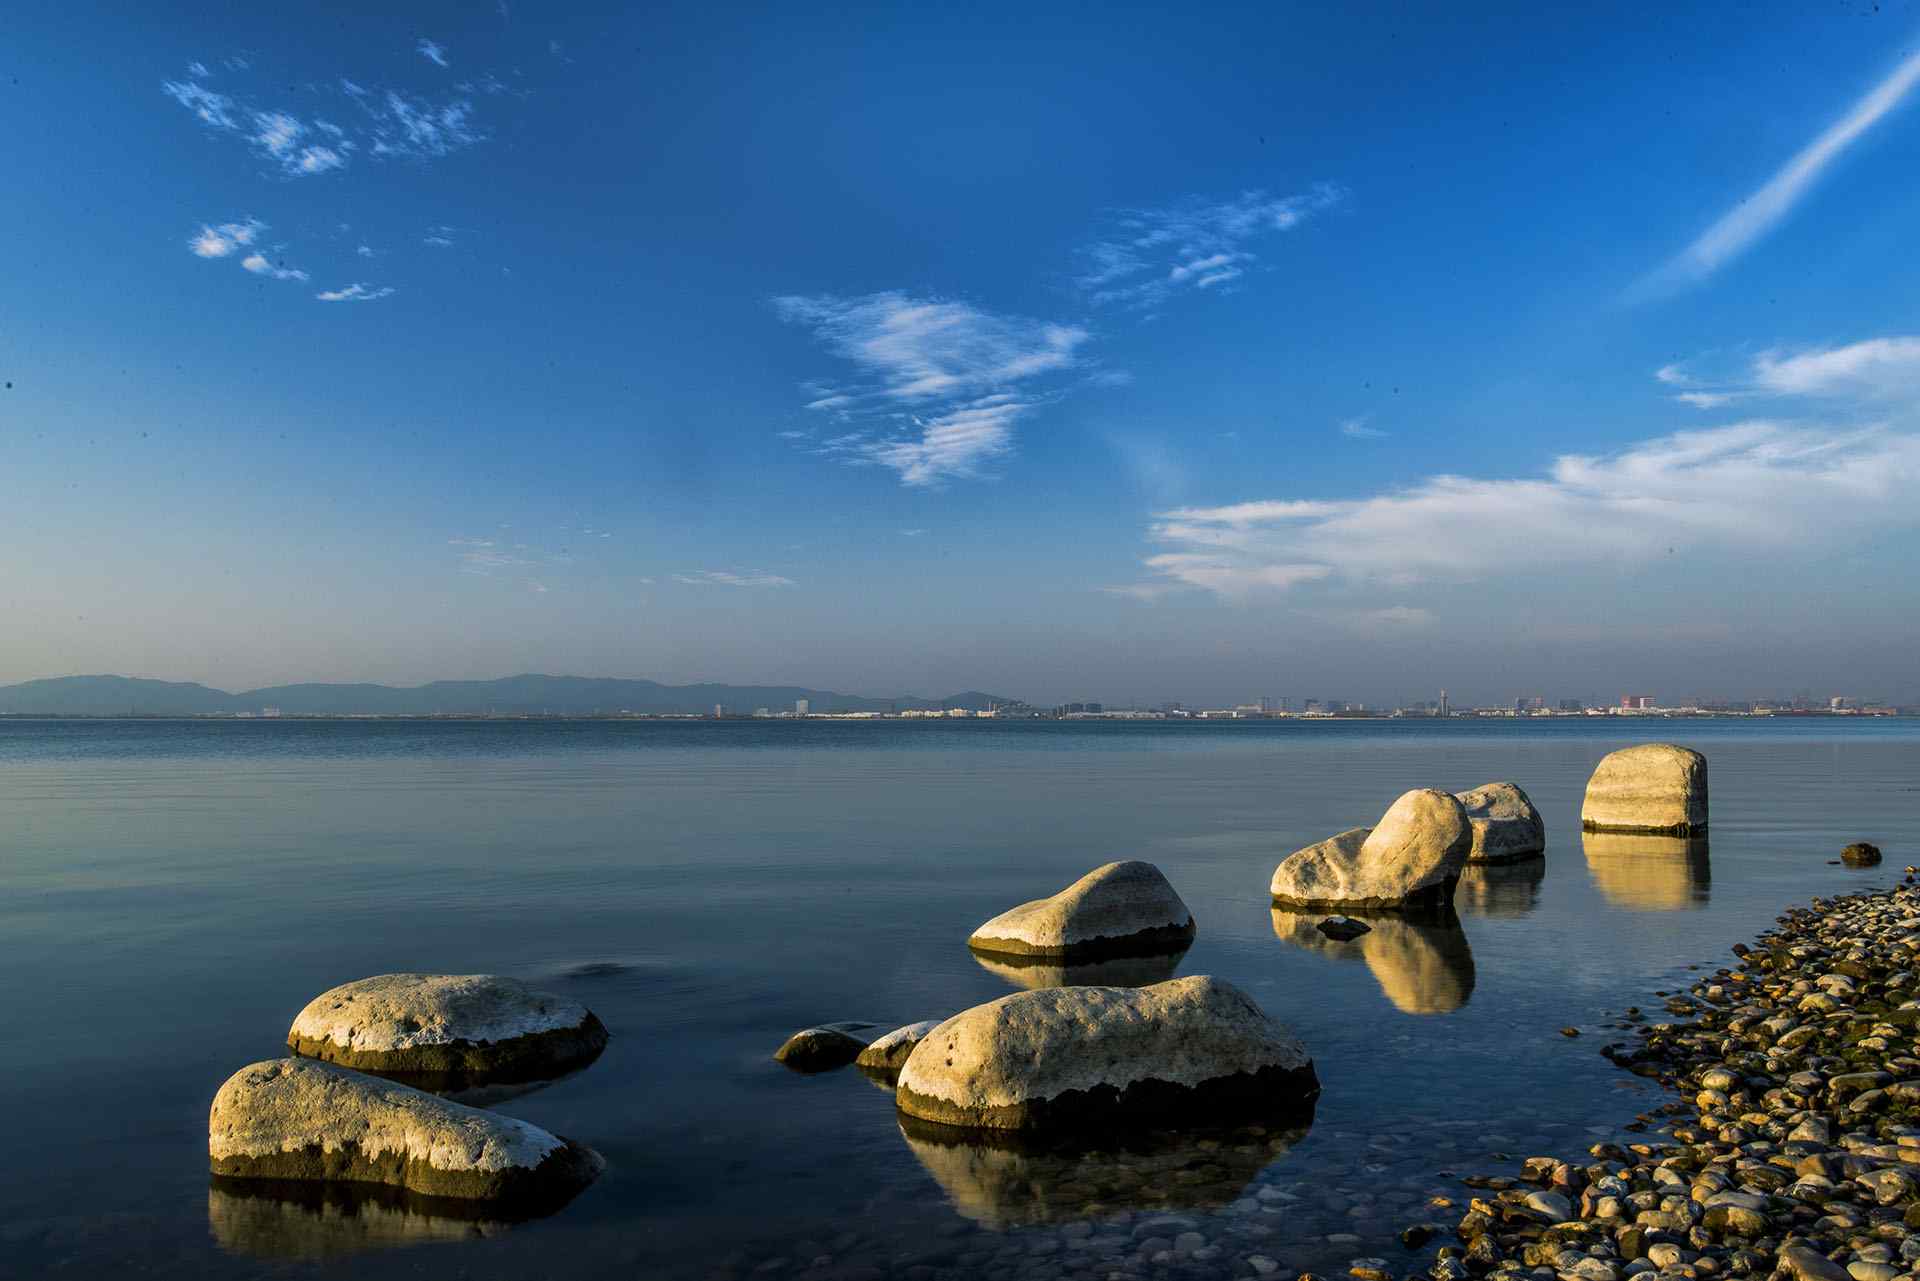 苏州太湖风景区风景图片